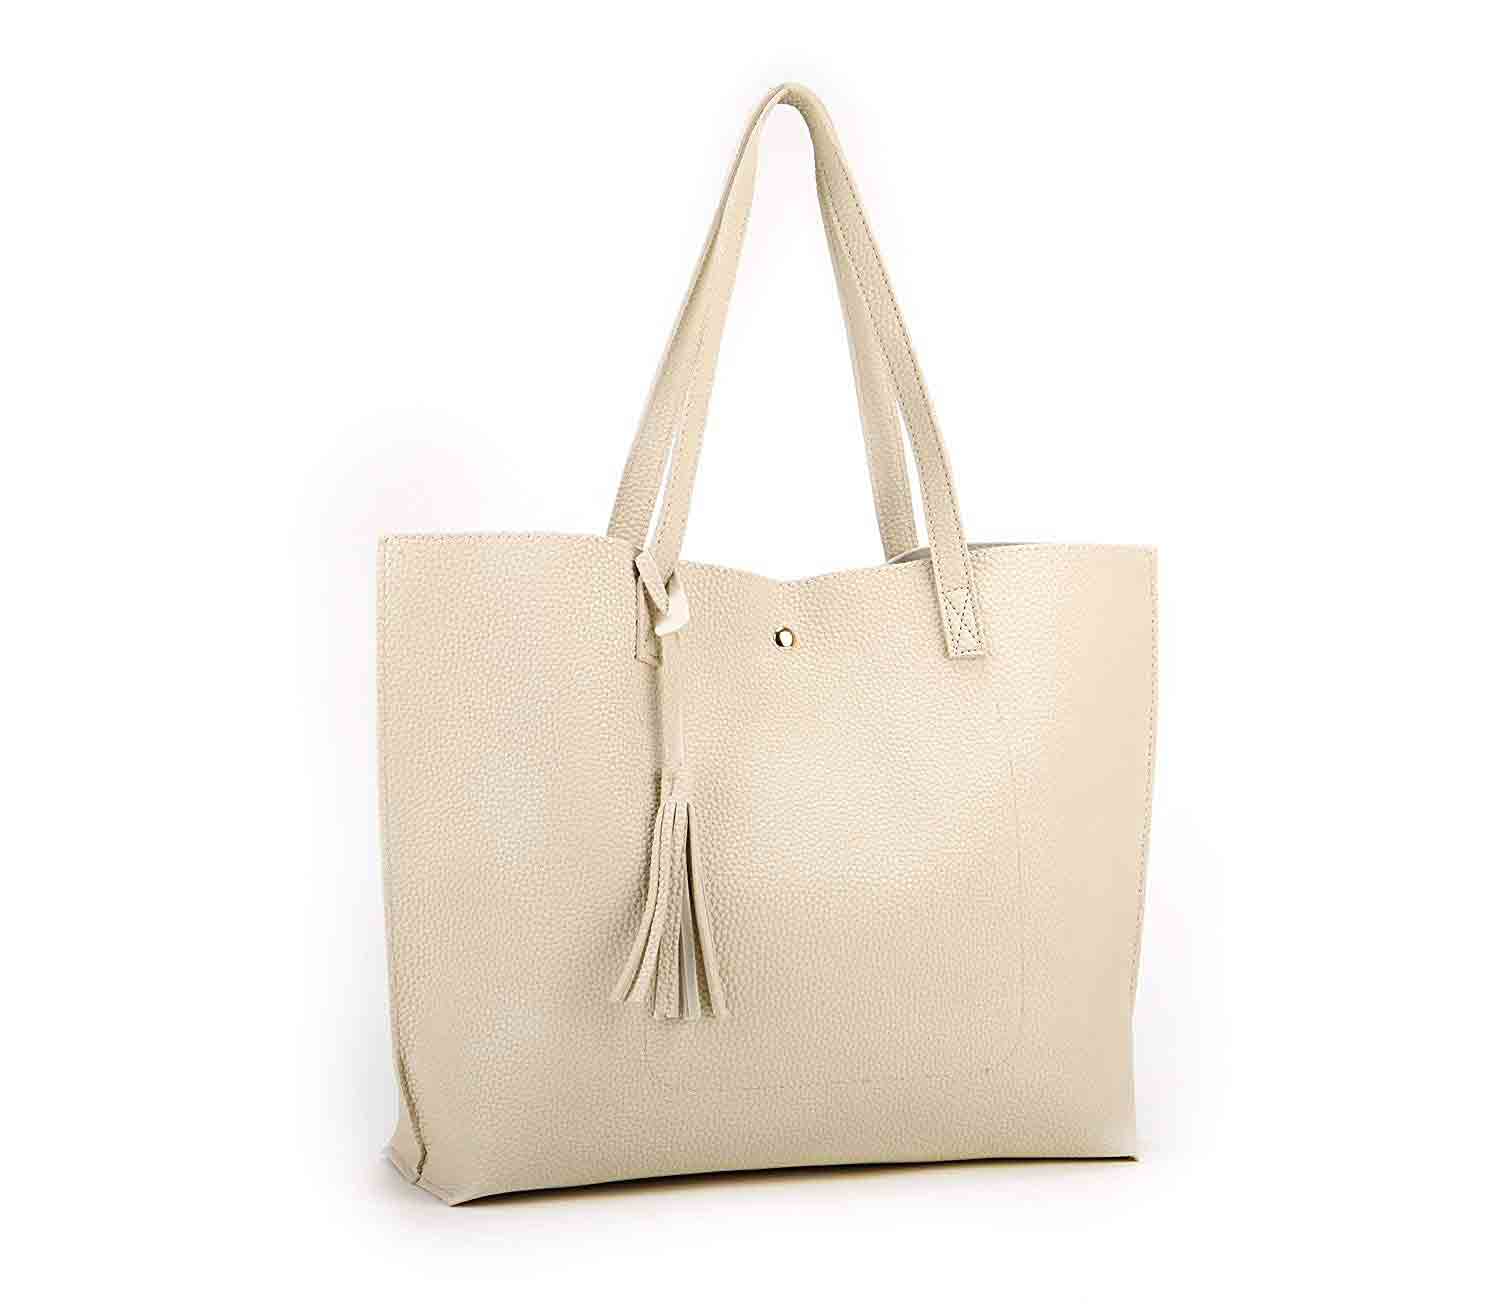 Off white handbag designs for girls